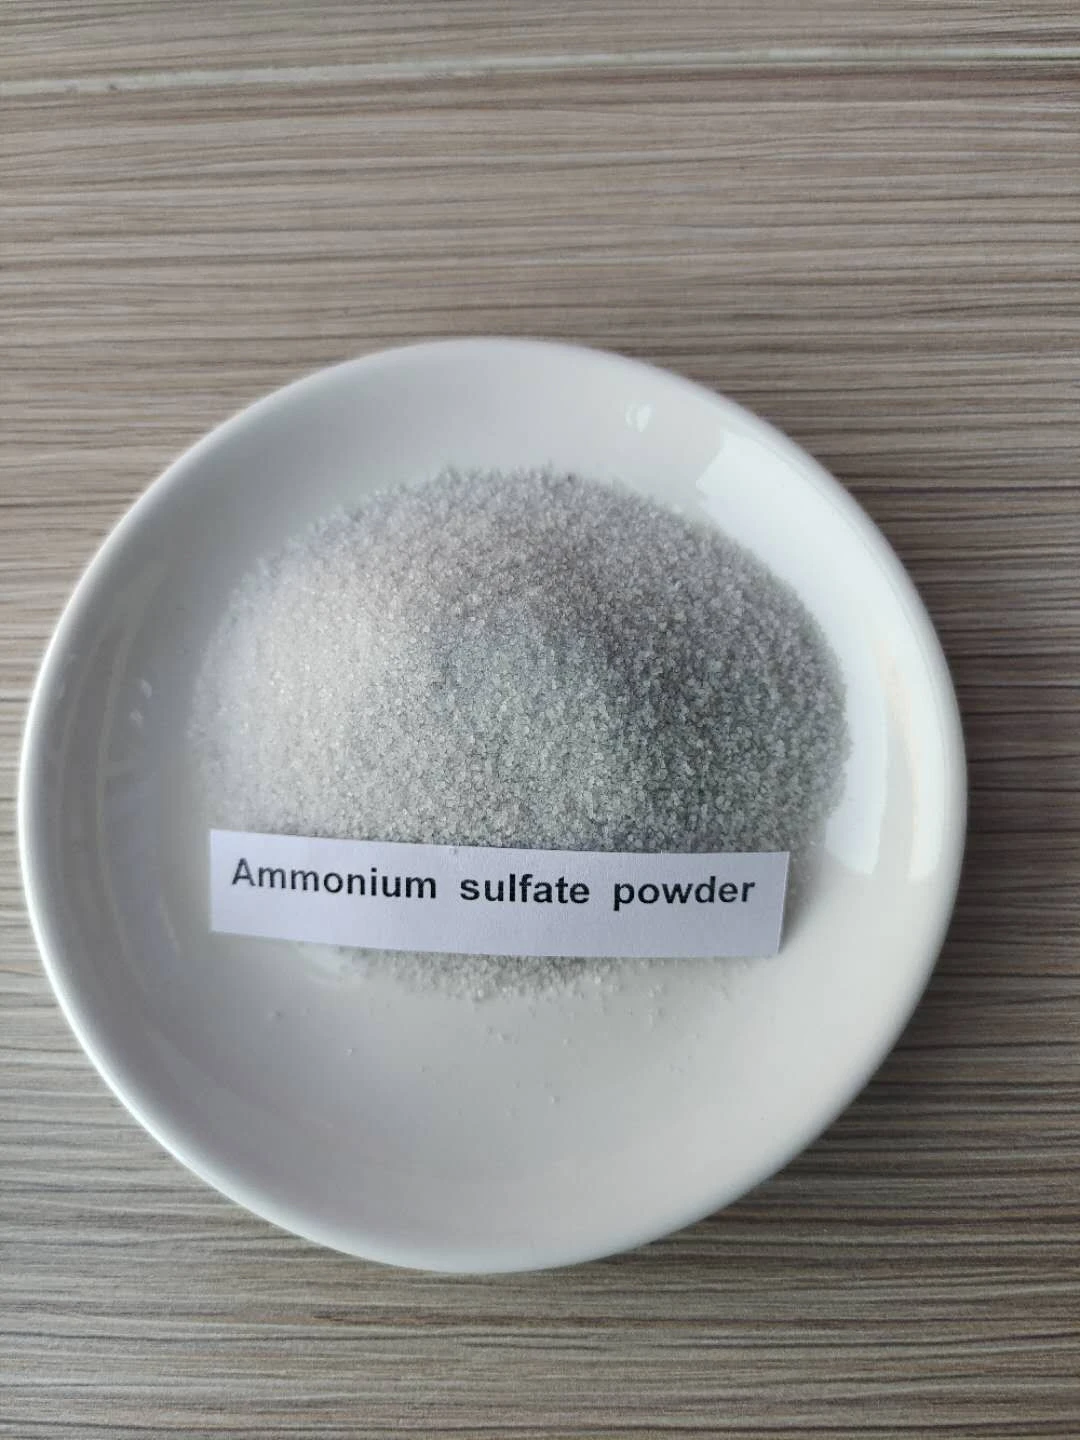 Powder Ammonium Sulfate for agriculture